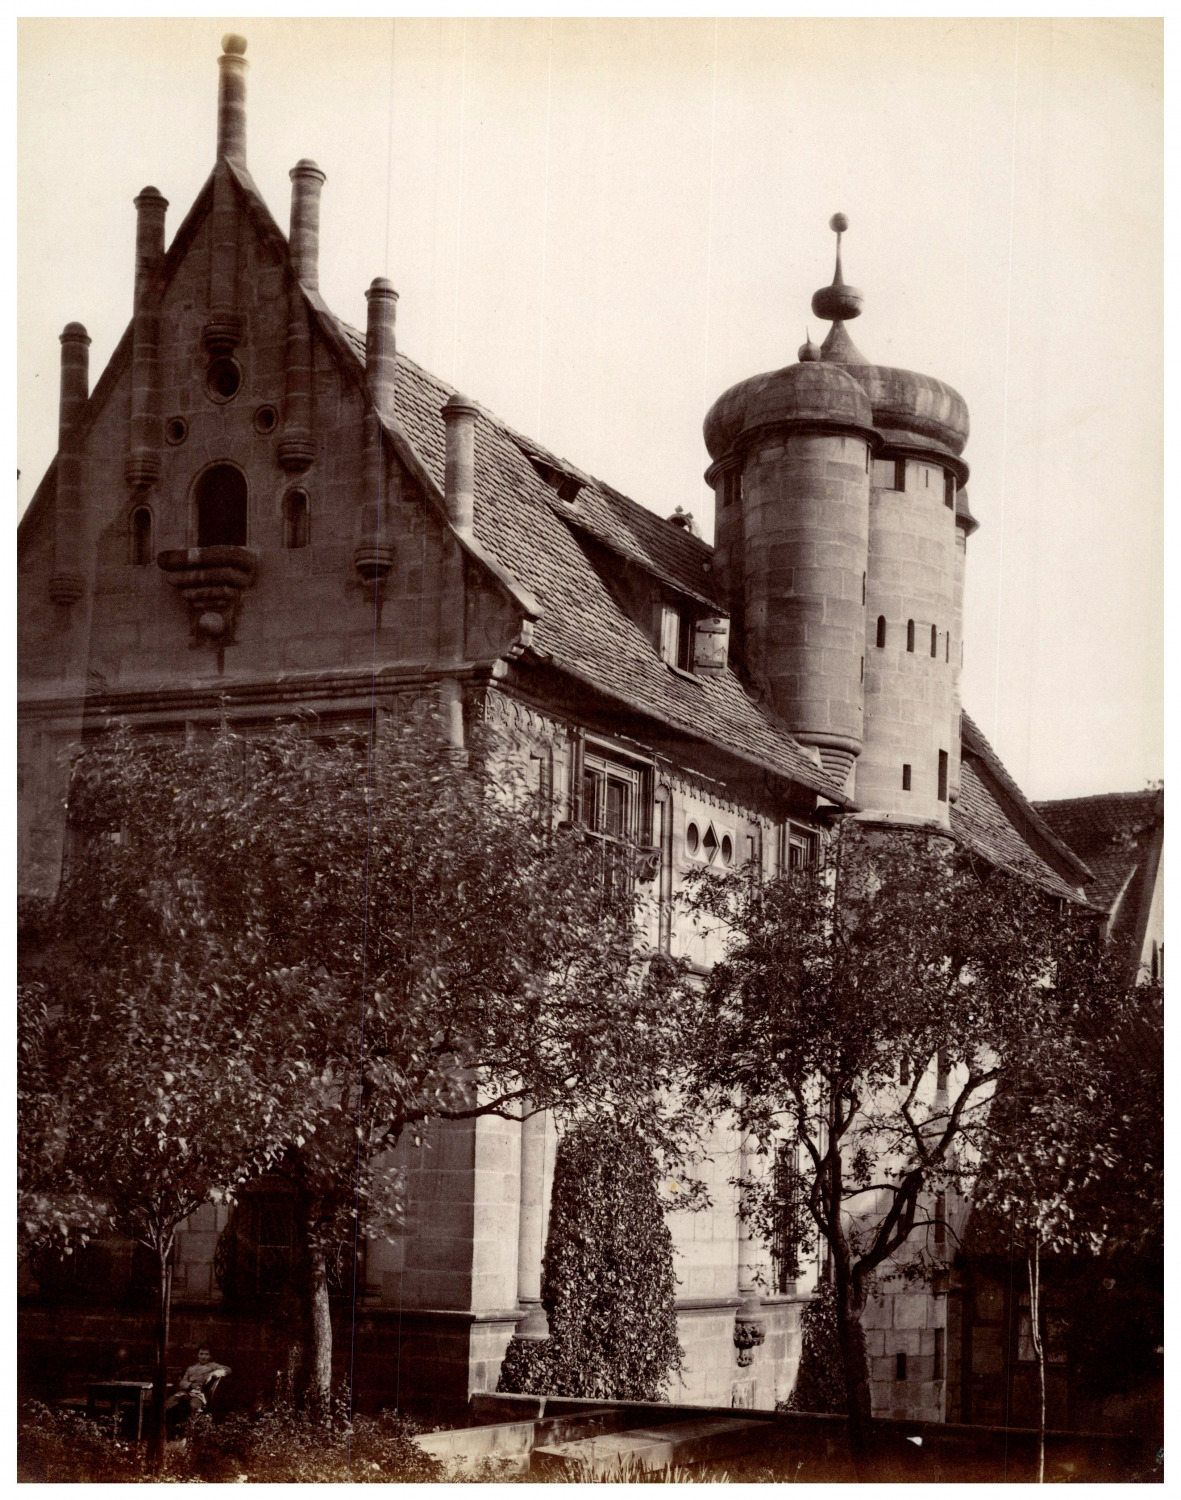 Deutschland, Nuremberg, Tucher-Villa Vintage Print, Albumin Print 26.5x21